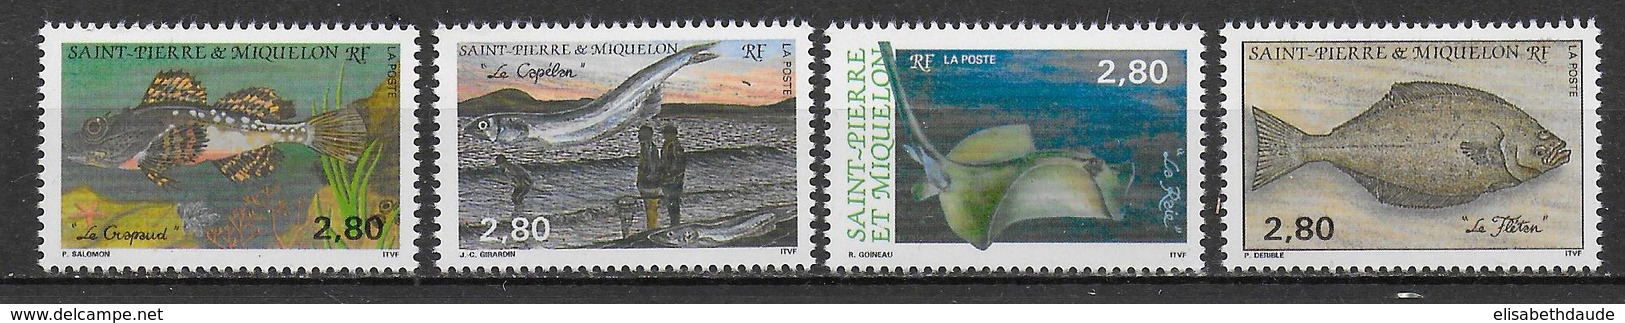 SPM - 1993 - LIVRAISON GRATUITE A PARTIR DE 5 EUR D'ACHAT - YVERT N°580/583 **  MNH - FAUNE / POISSONS - - Unused Stamps